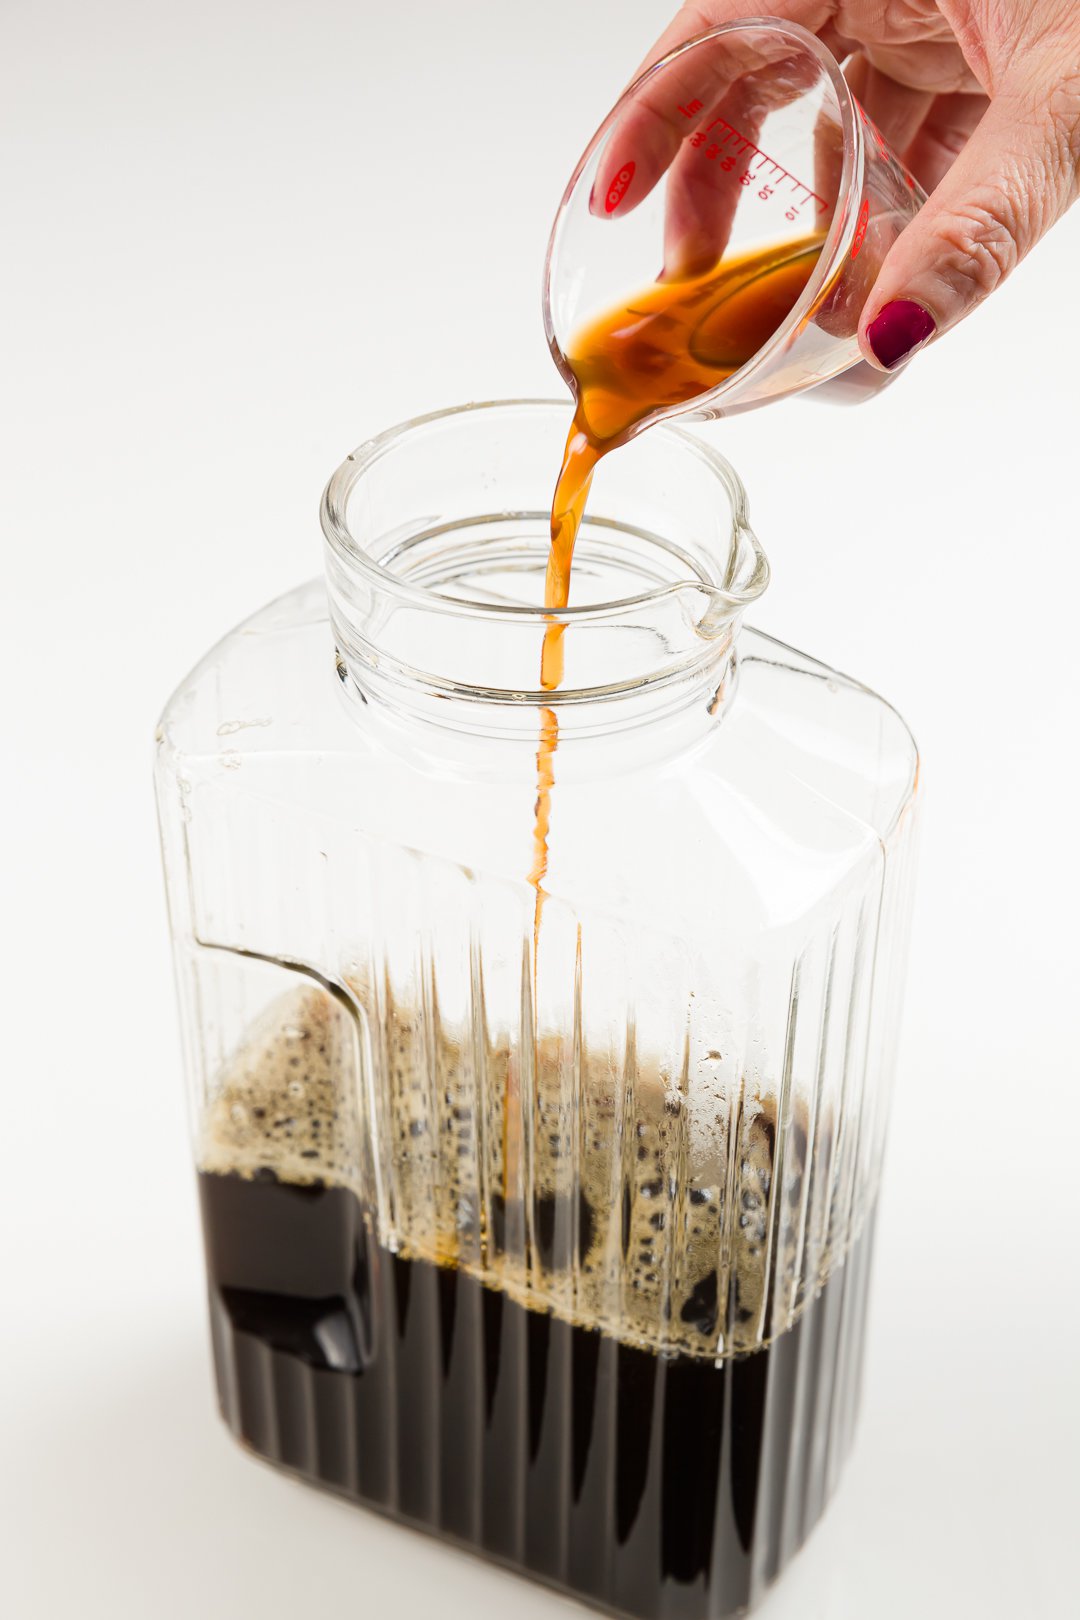 Agregar extracto de vainilla al café endulzado en una jarra para hacer Kahlua casero